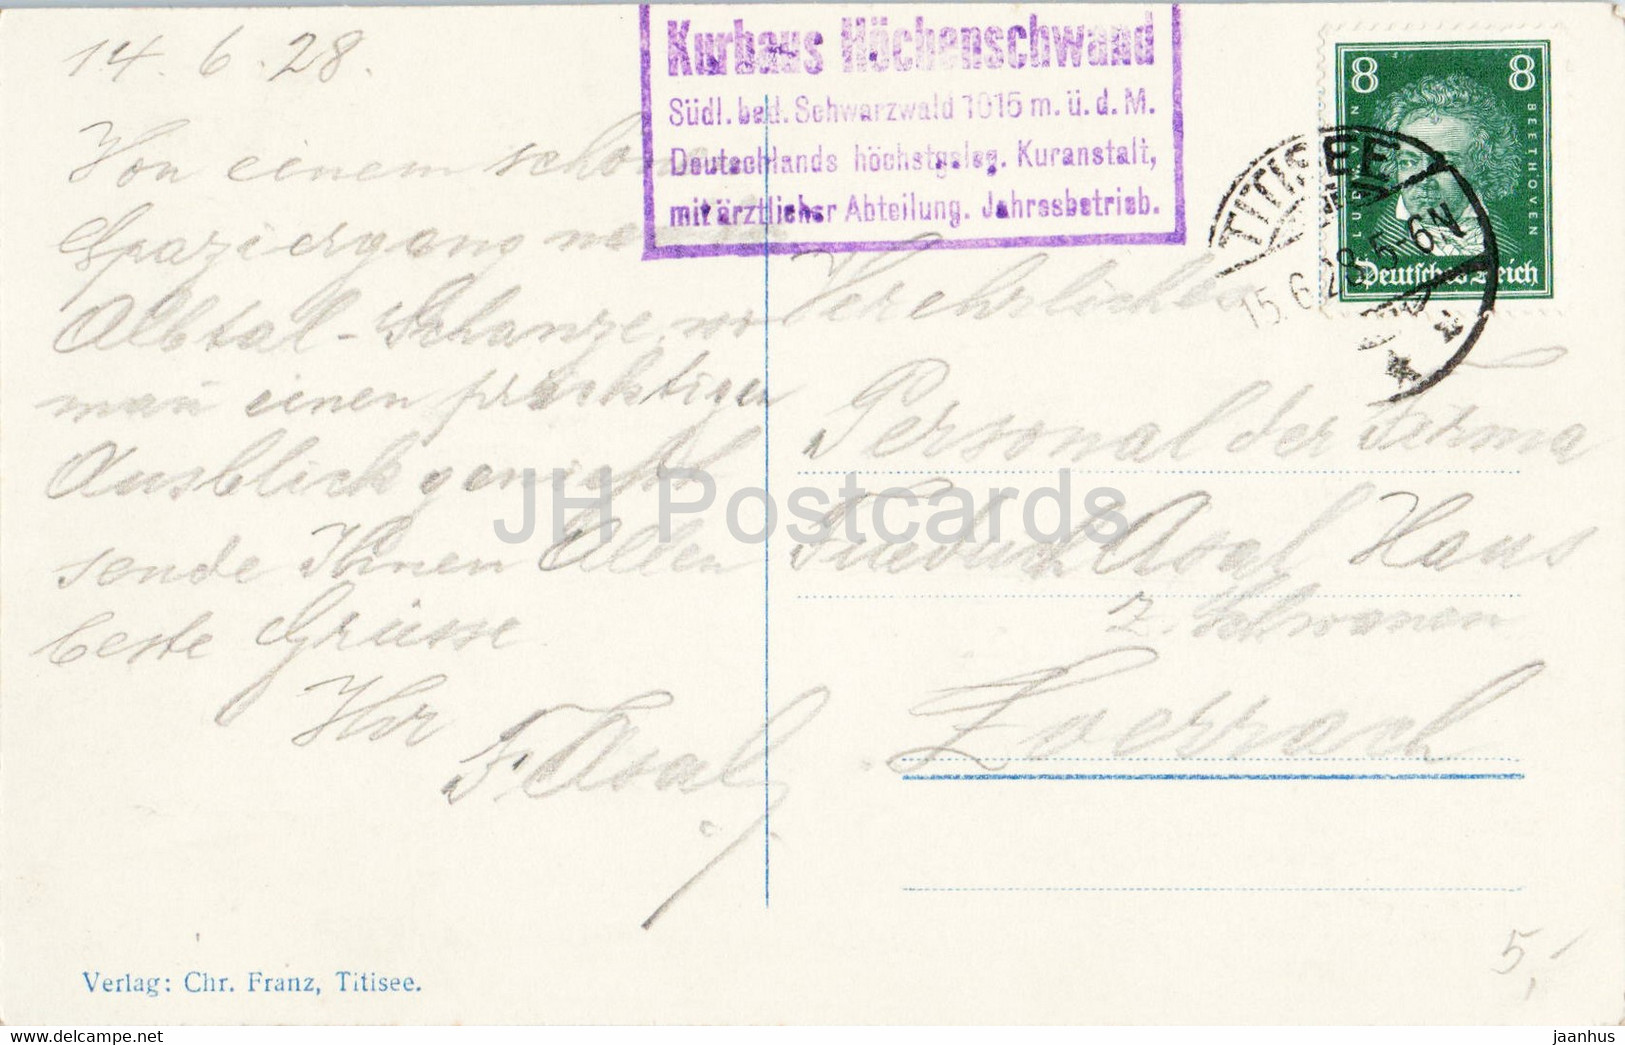 Hochenschwand - Schwarzwald - 1015 M - Kurhaus Hohenschwand - Old Postcard - 1928 - Germany - Used - Höchenschwand